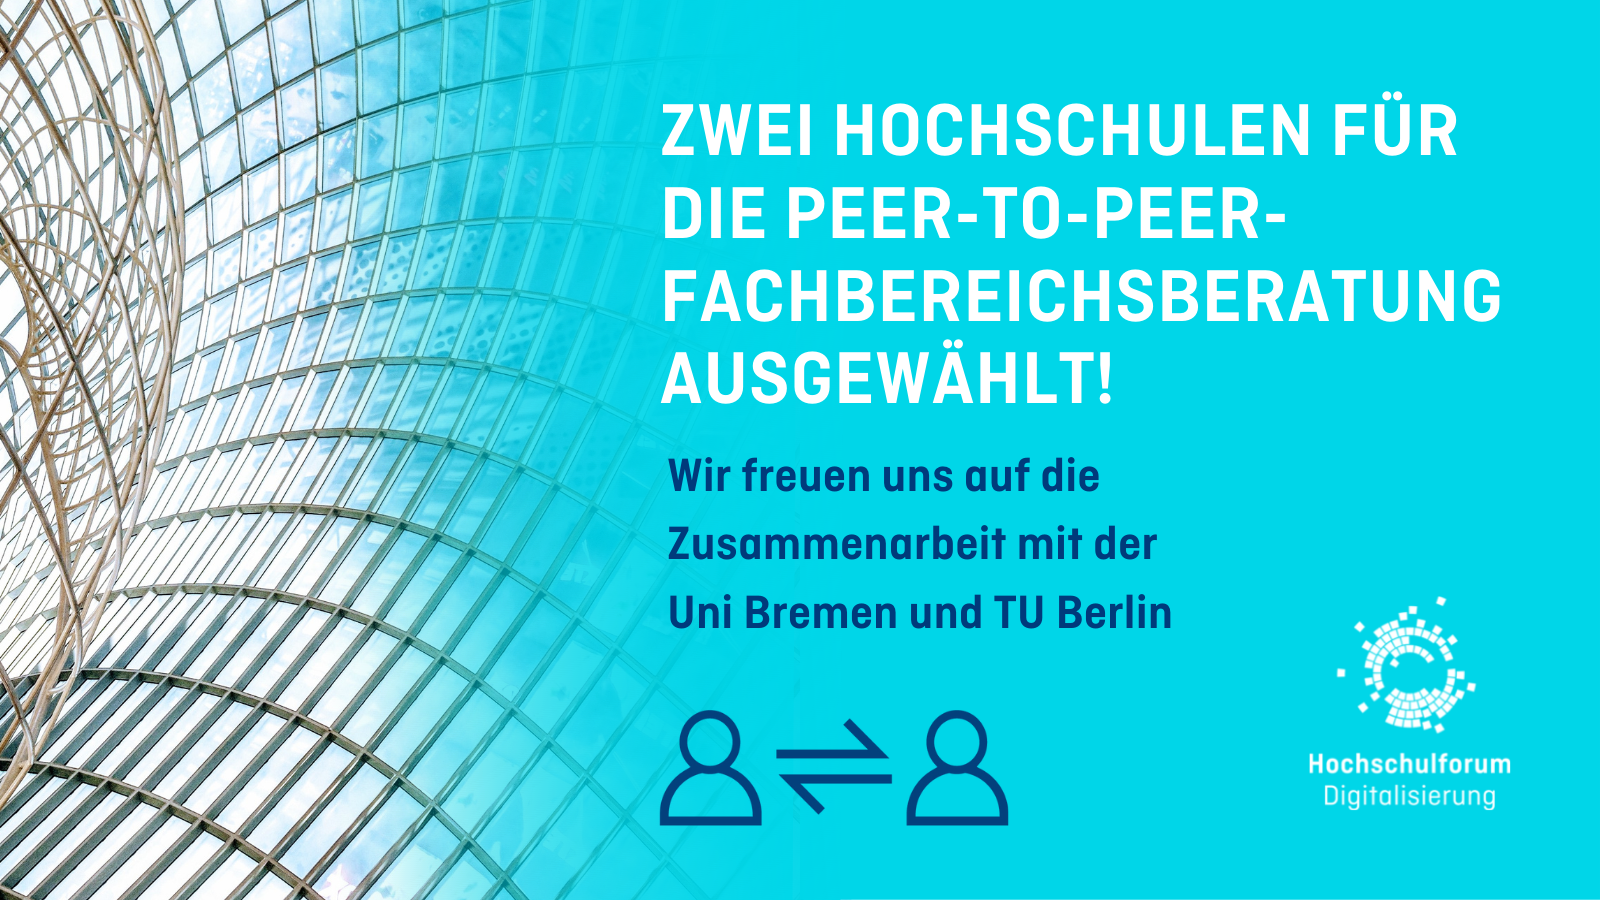 Titelbild zur Meldung: ZWEI Hochschulen für die Peer-to-peer-fachbereichsberatung ausgewählt!. Wir freuen uns auf die Zusammenarbeit mit der  Uni Bremen und TU Berlin. Logo: Hochschulforum Digitalisierung